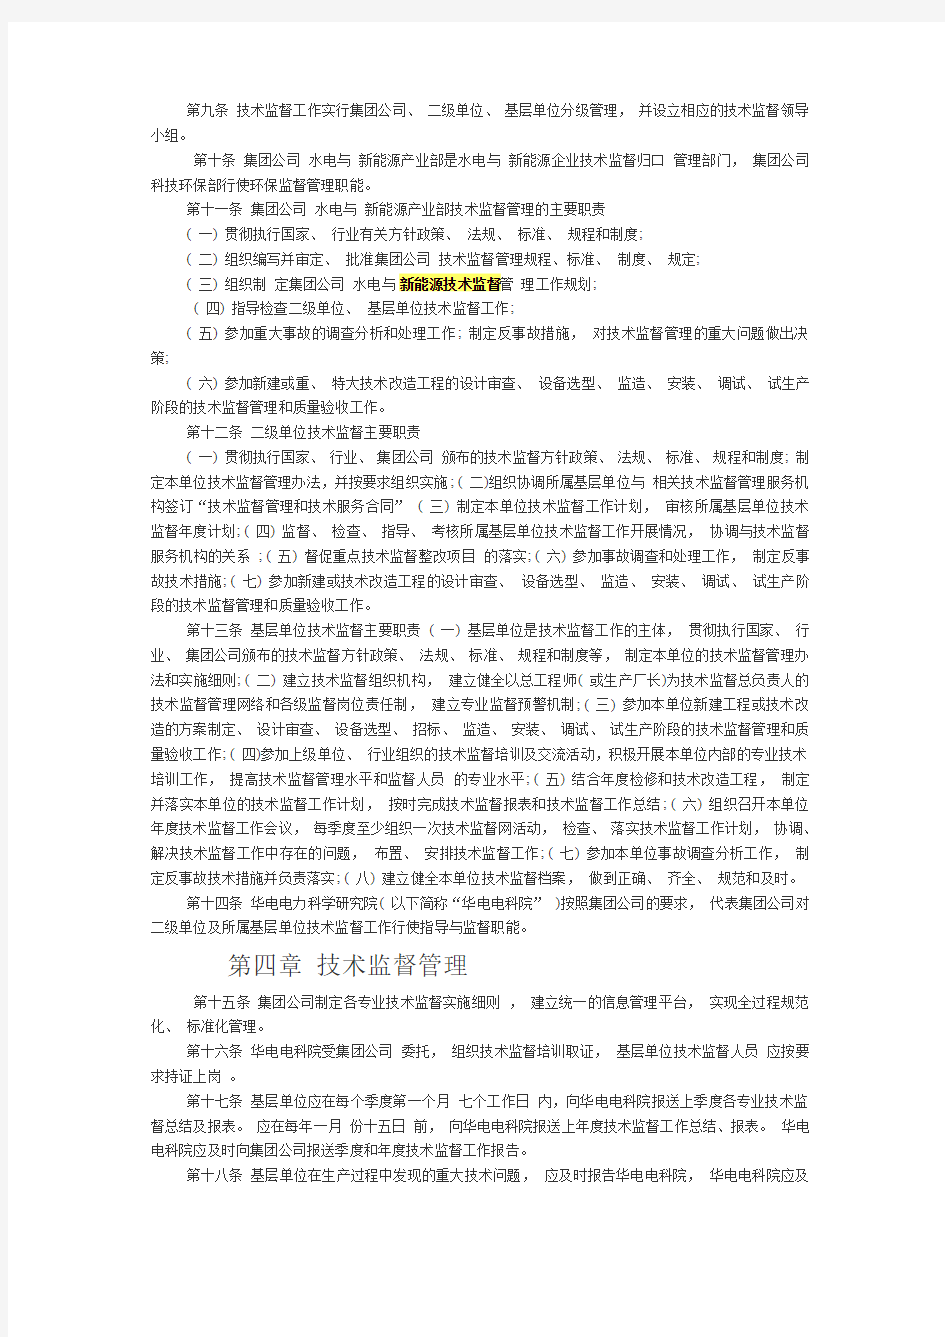 中国华电集团公司水电与新能源技术监督管理办法